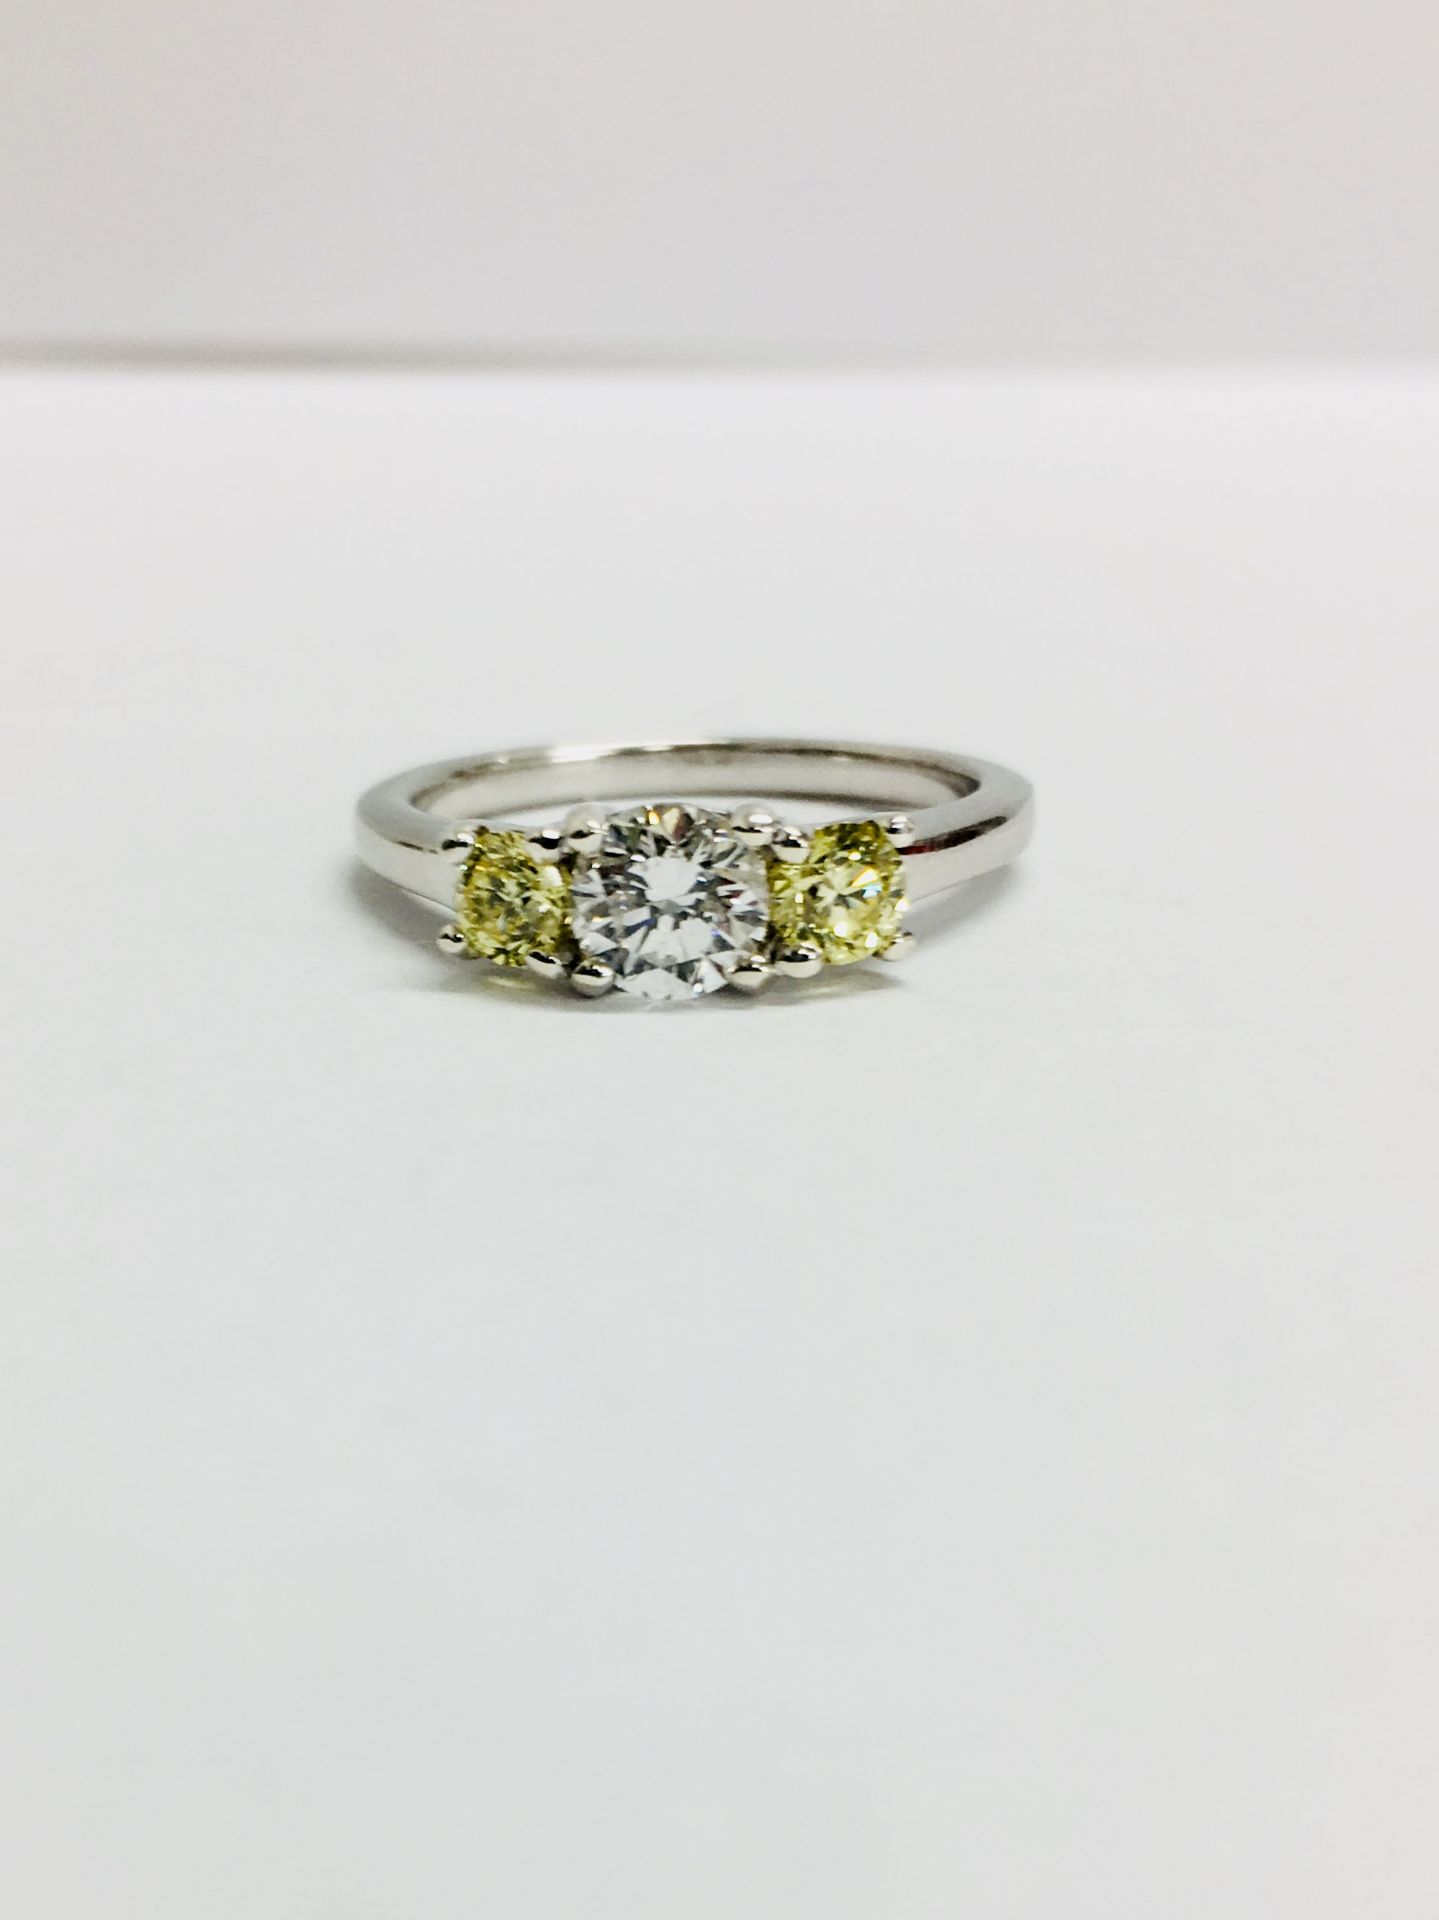 PLatinum diamond three stone ring,0.50ct centre D colour vs clarity brilliant cut diamond.two 0.10ct